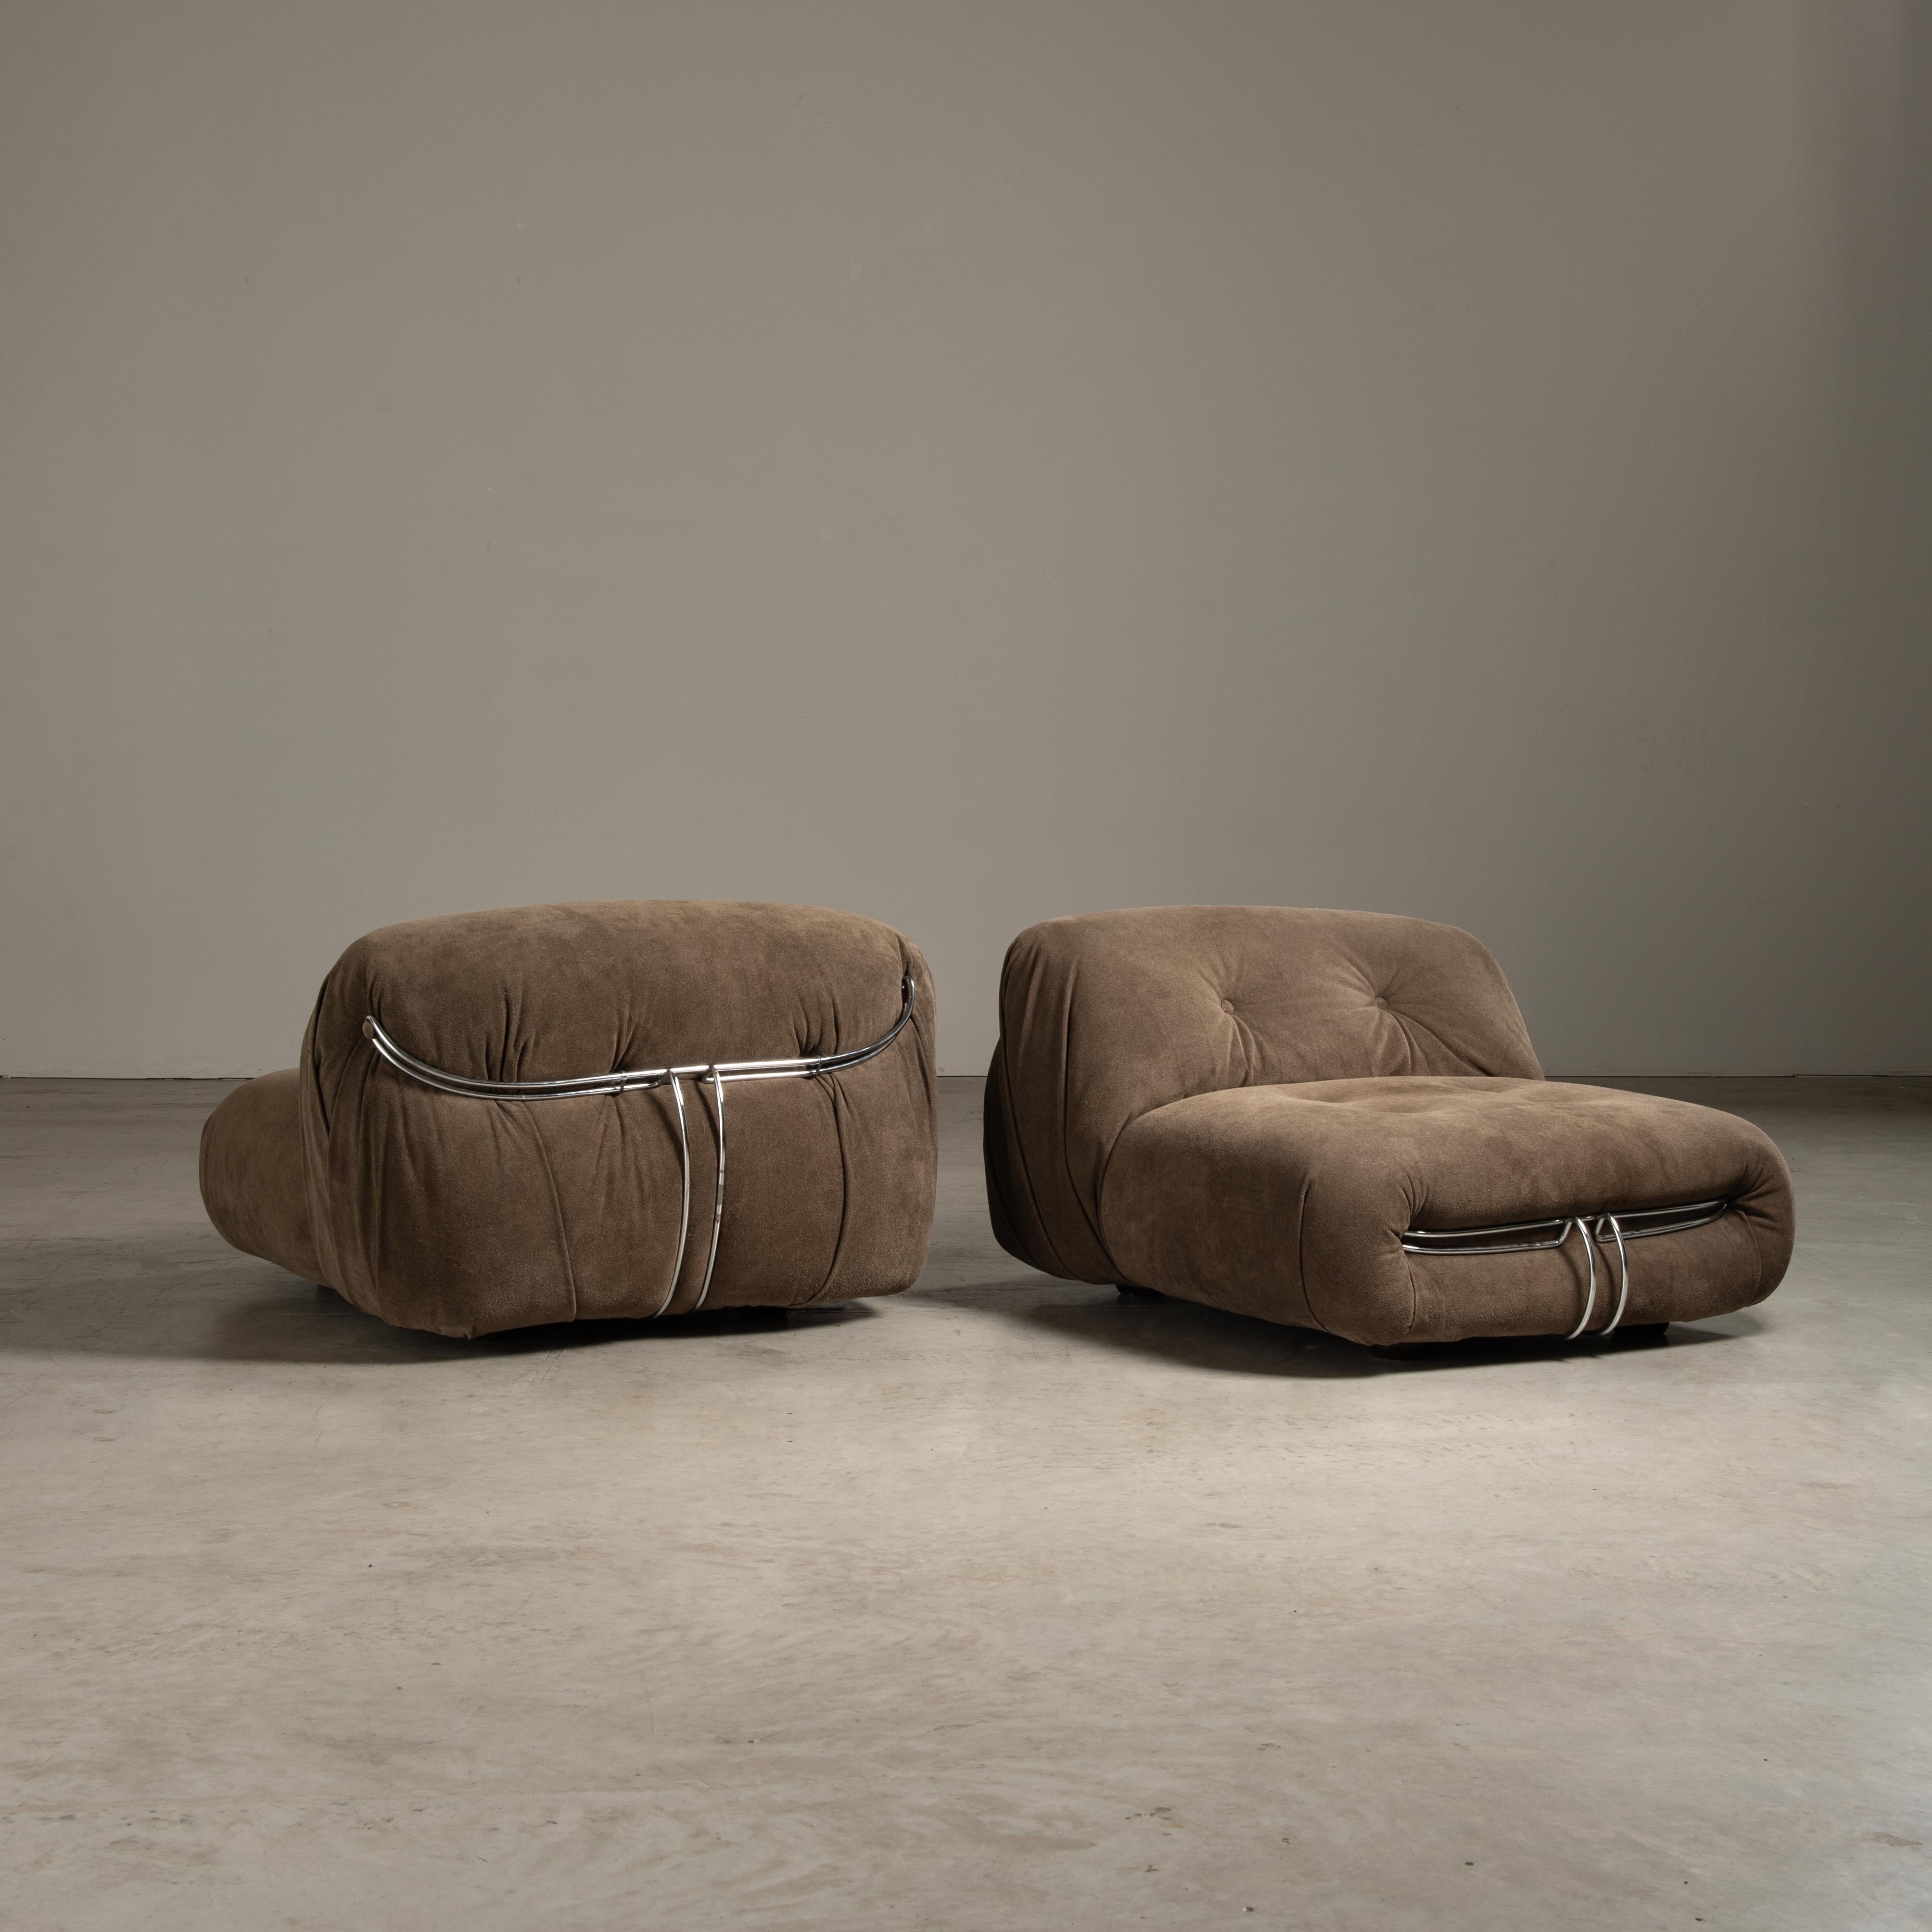 Cette chaise longue Soriana se caractérise par sa forme imposante et bulbeuse, enveloppant l'utilisateur dans une étreinte volumineuse et rembourrée. L'utilisation d'un tissu doux, semblable à du daim, dans un ton riche et brun terreux, suggère une